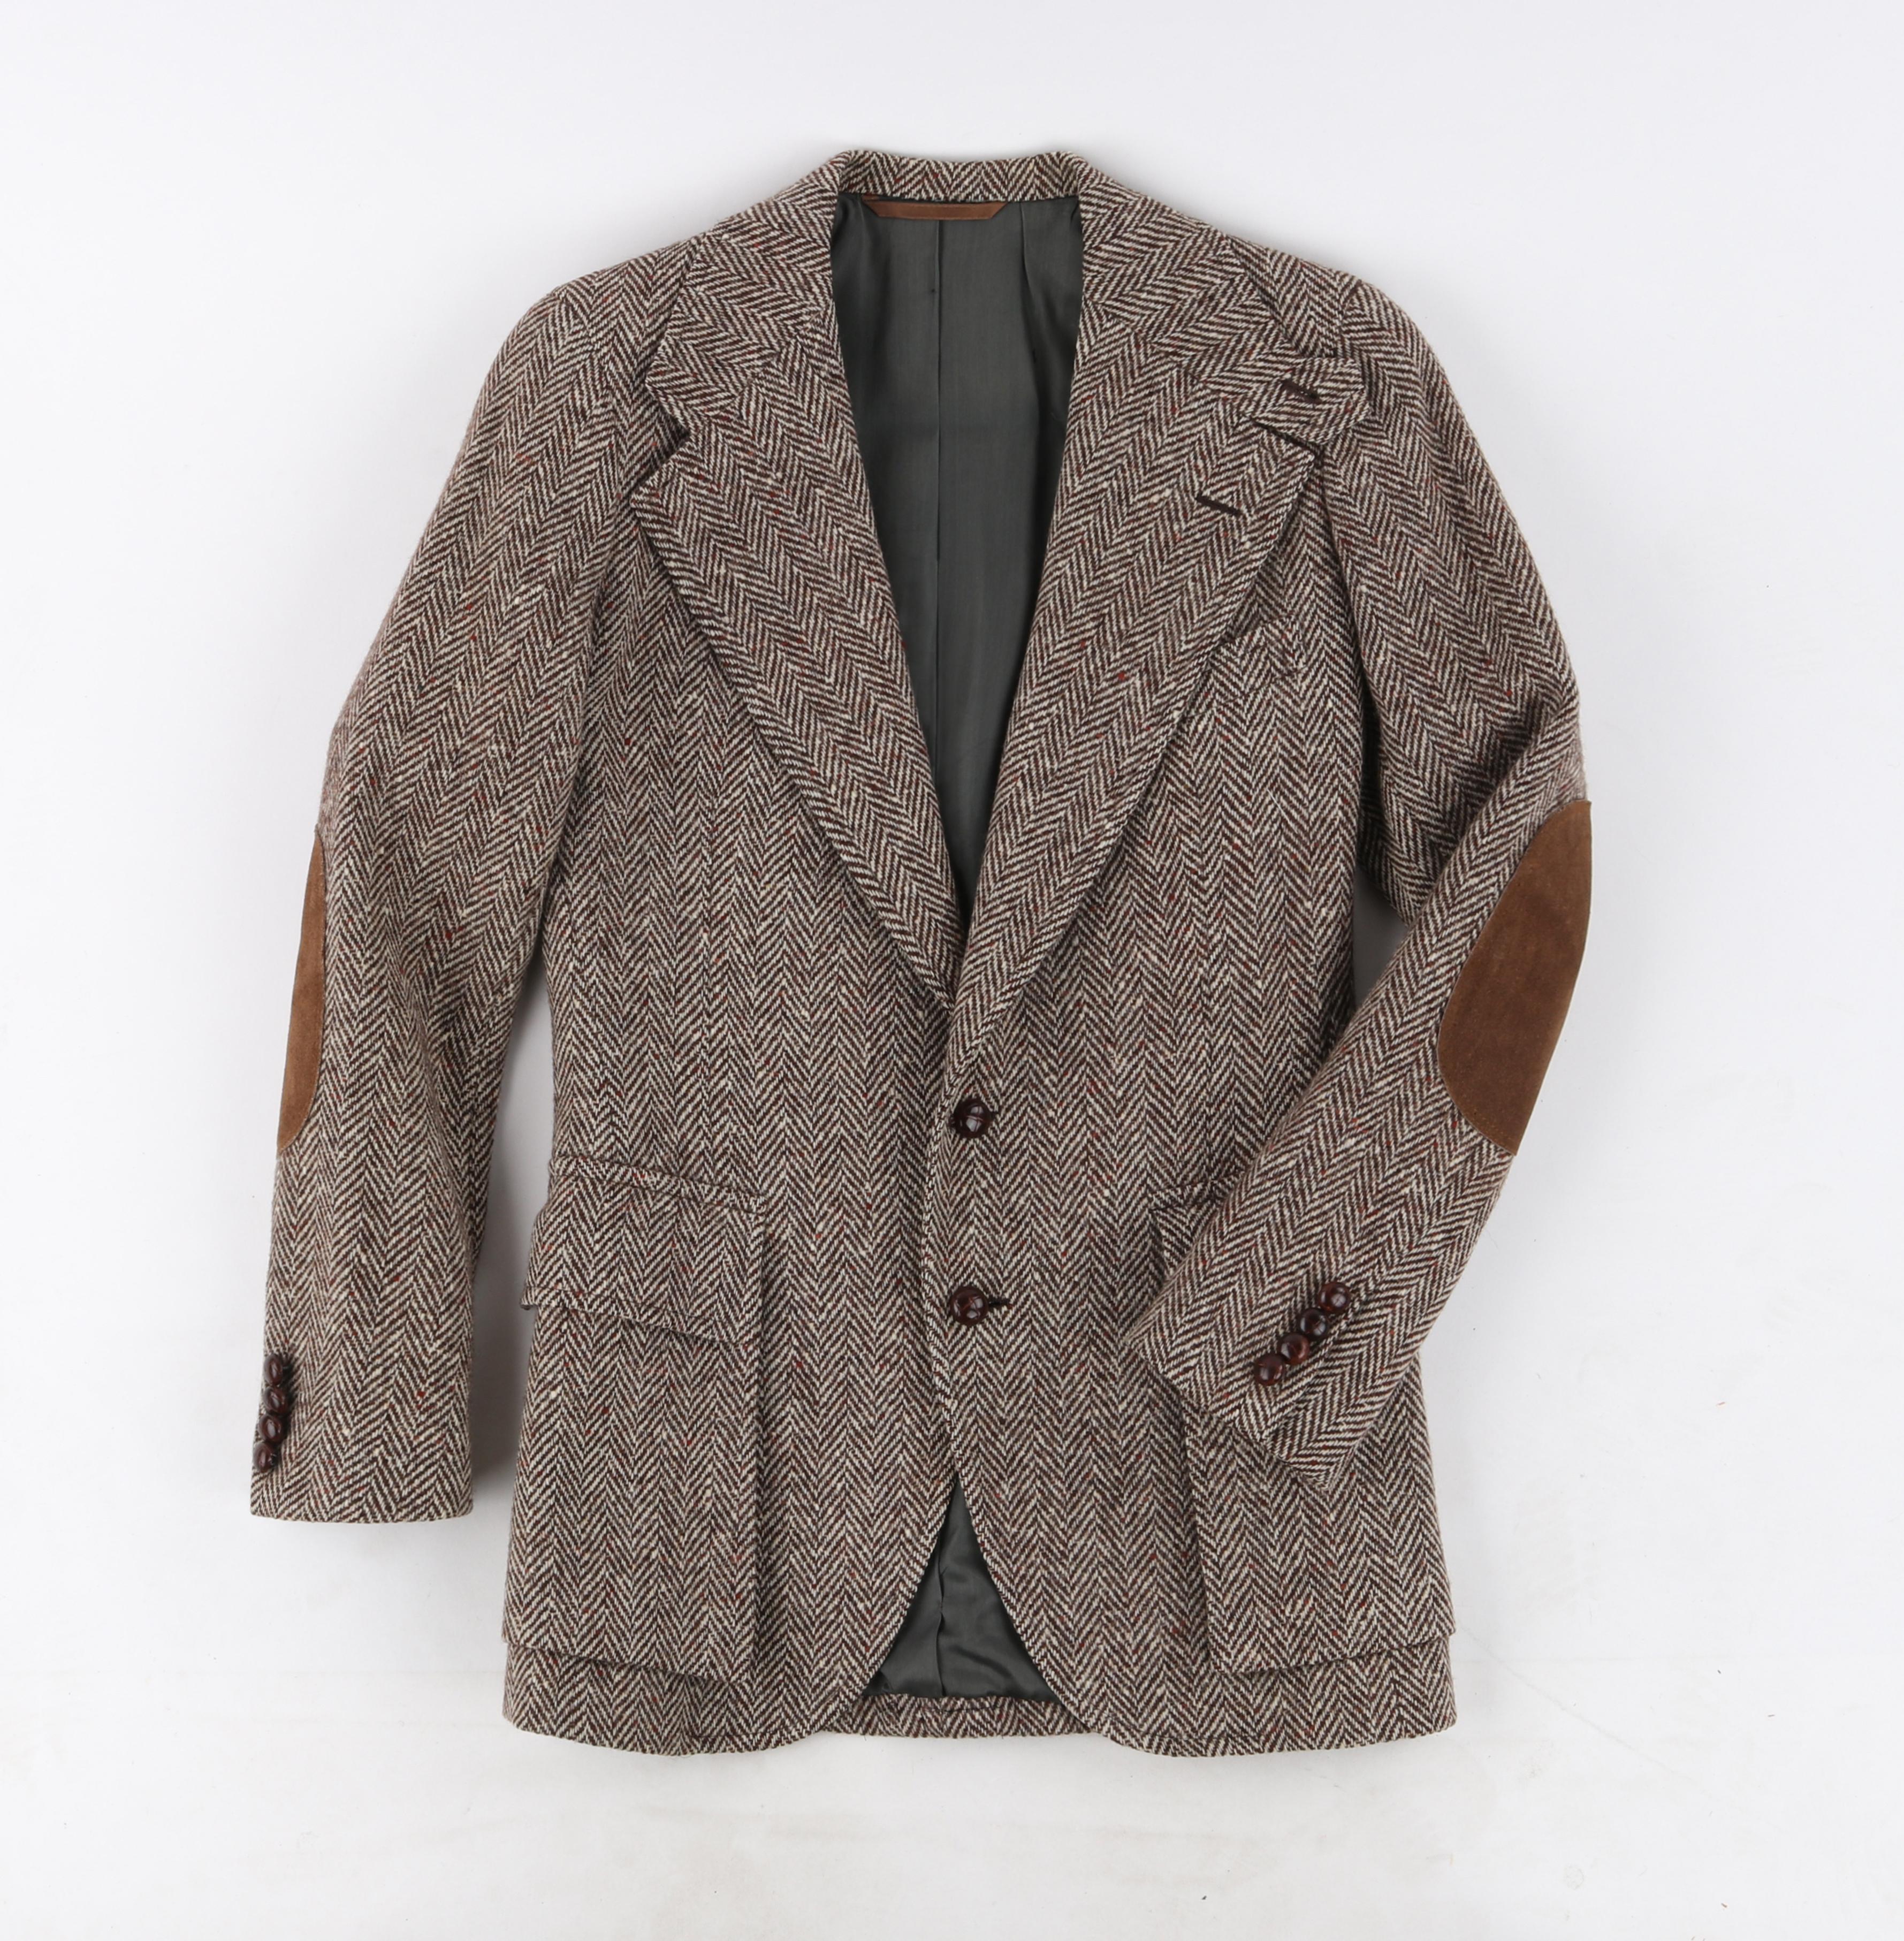 RALPH LAUREN c.1970's Vtg Brown White Tweed Wool Button Up Blazer Suit Jacket In Good Condition For Sale In Thiensville, WI